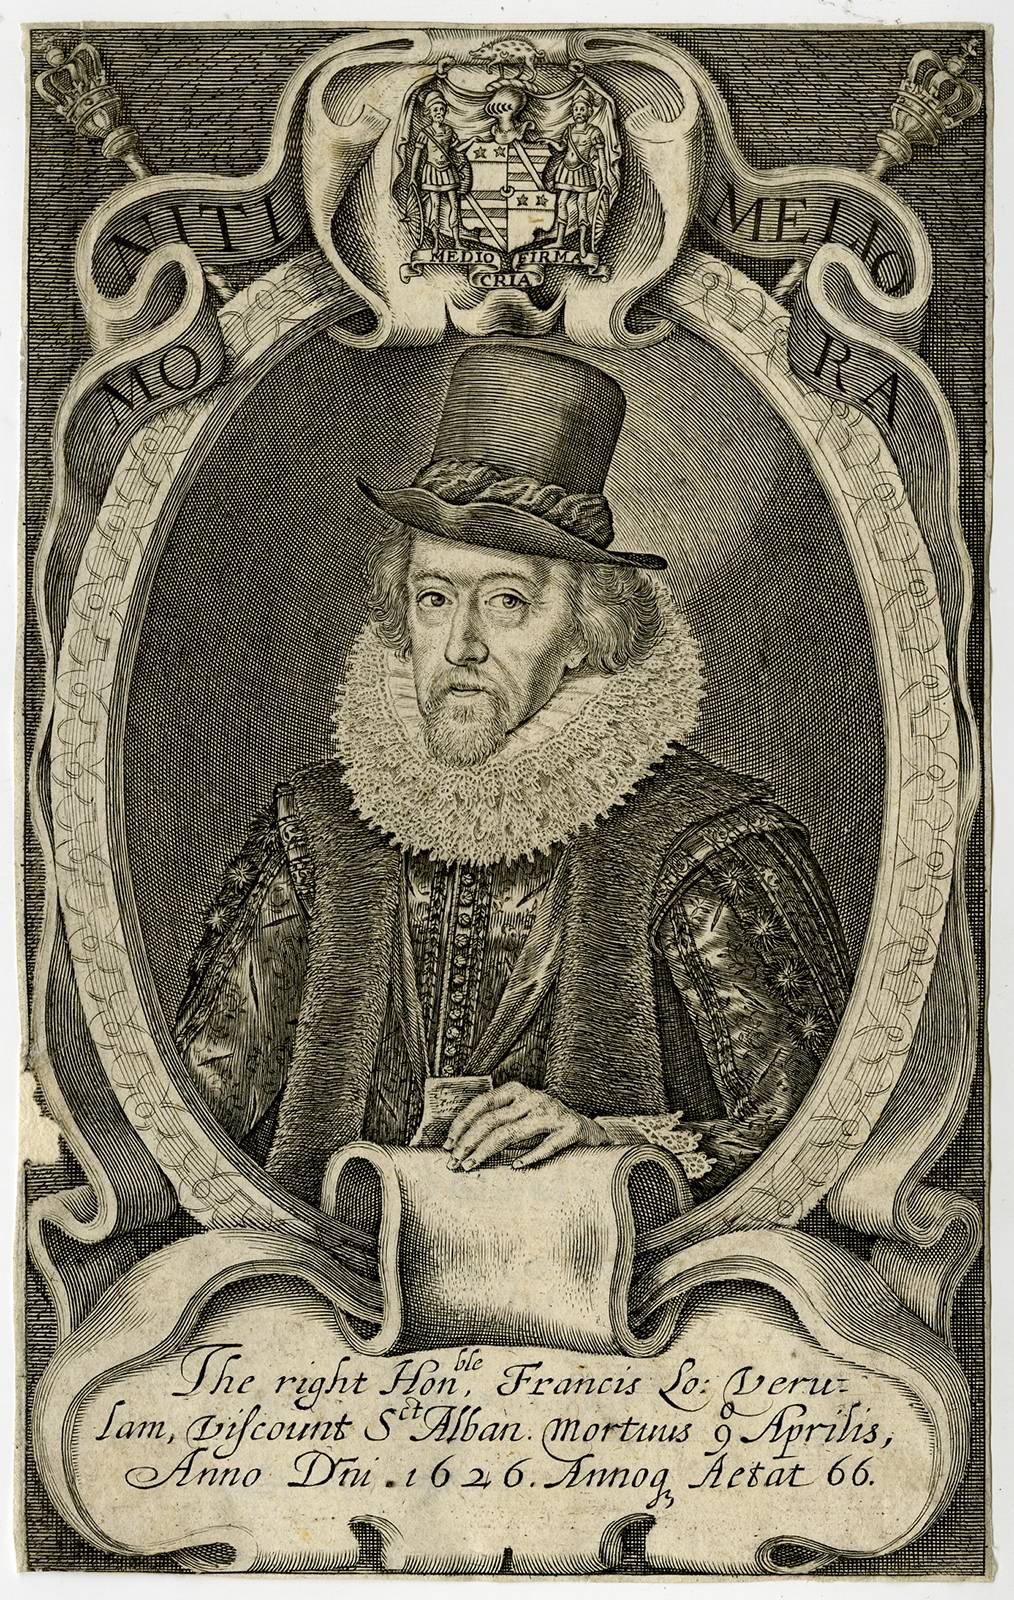 Simon de Passe Portrait Print - The right honble Francis [..] - Portrait of sir Francis Bacon.